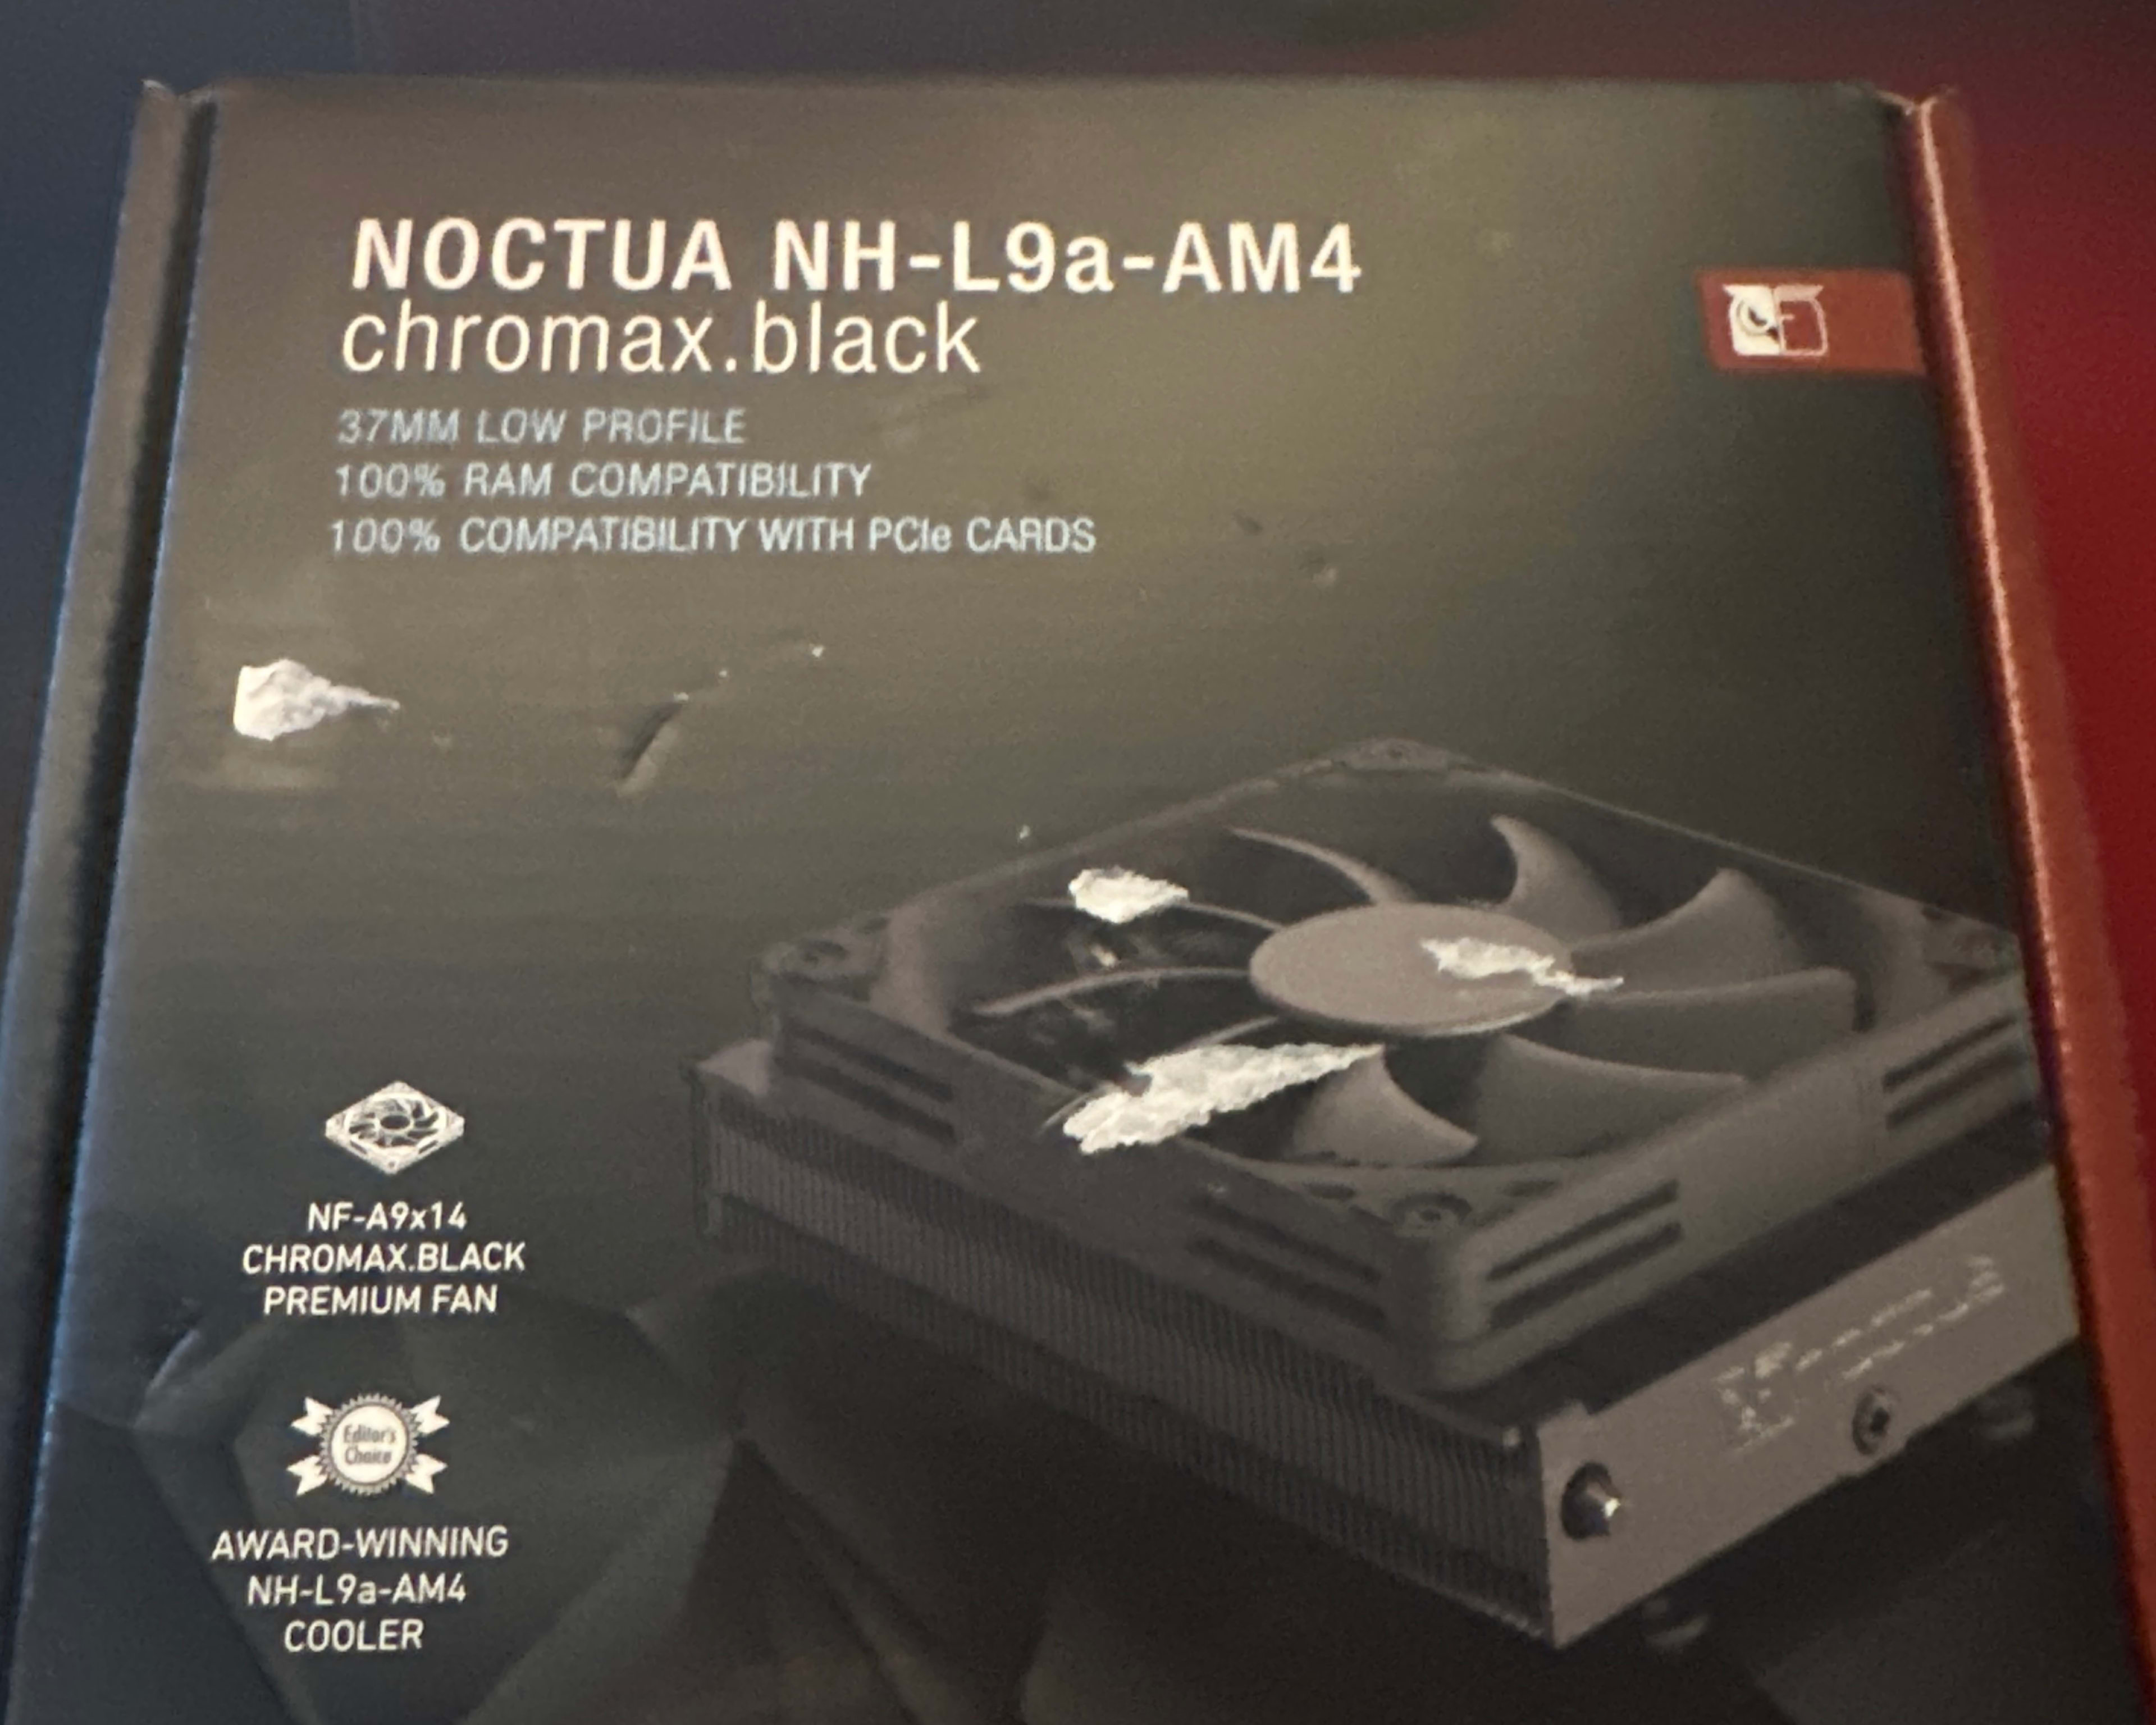 Noctua NH-L9a-AM4 chromax.black low profile cooler